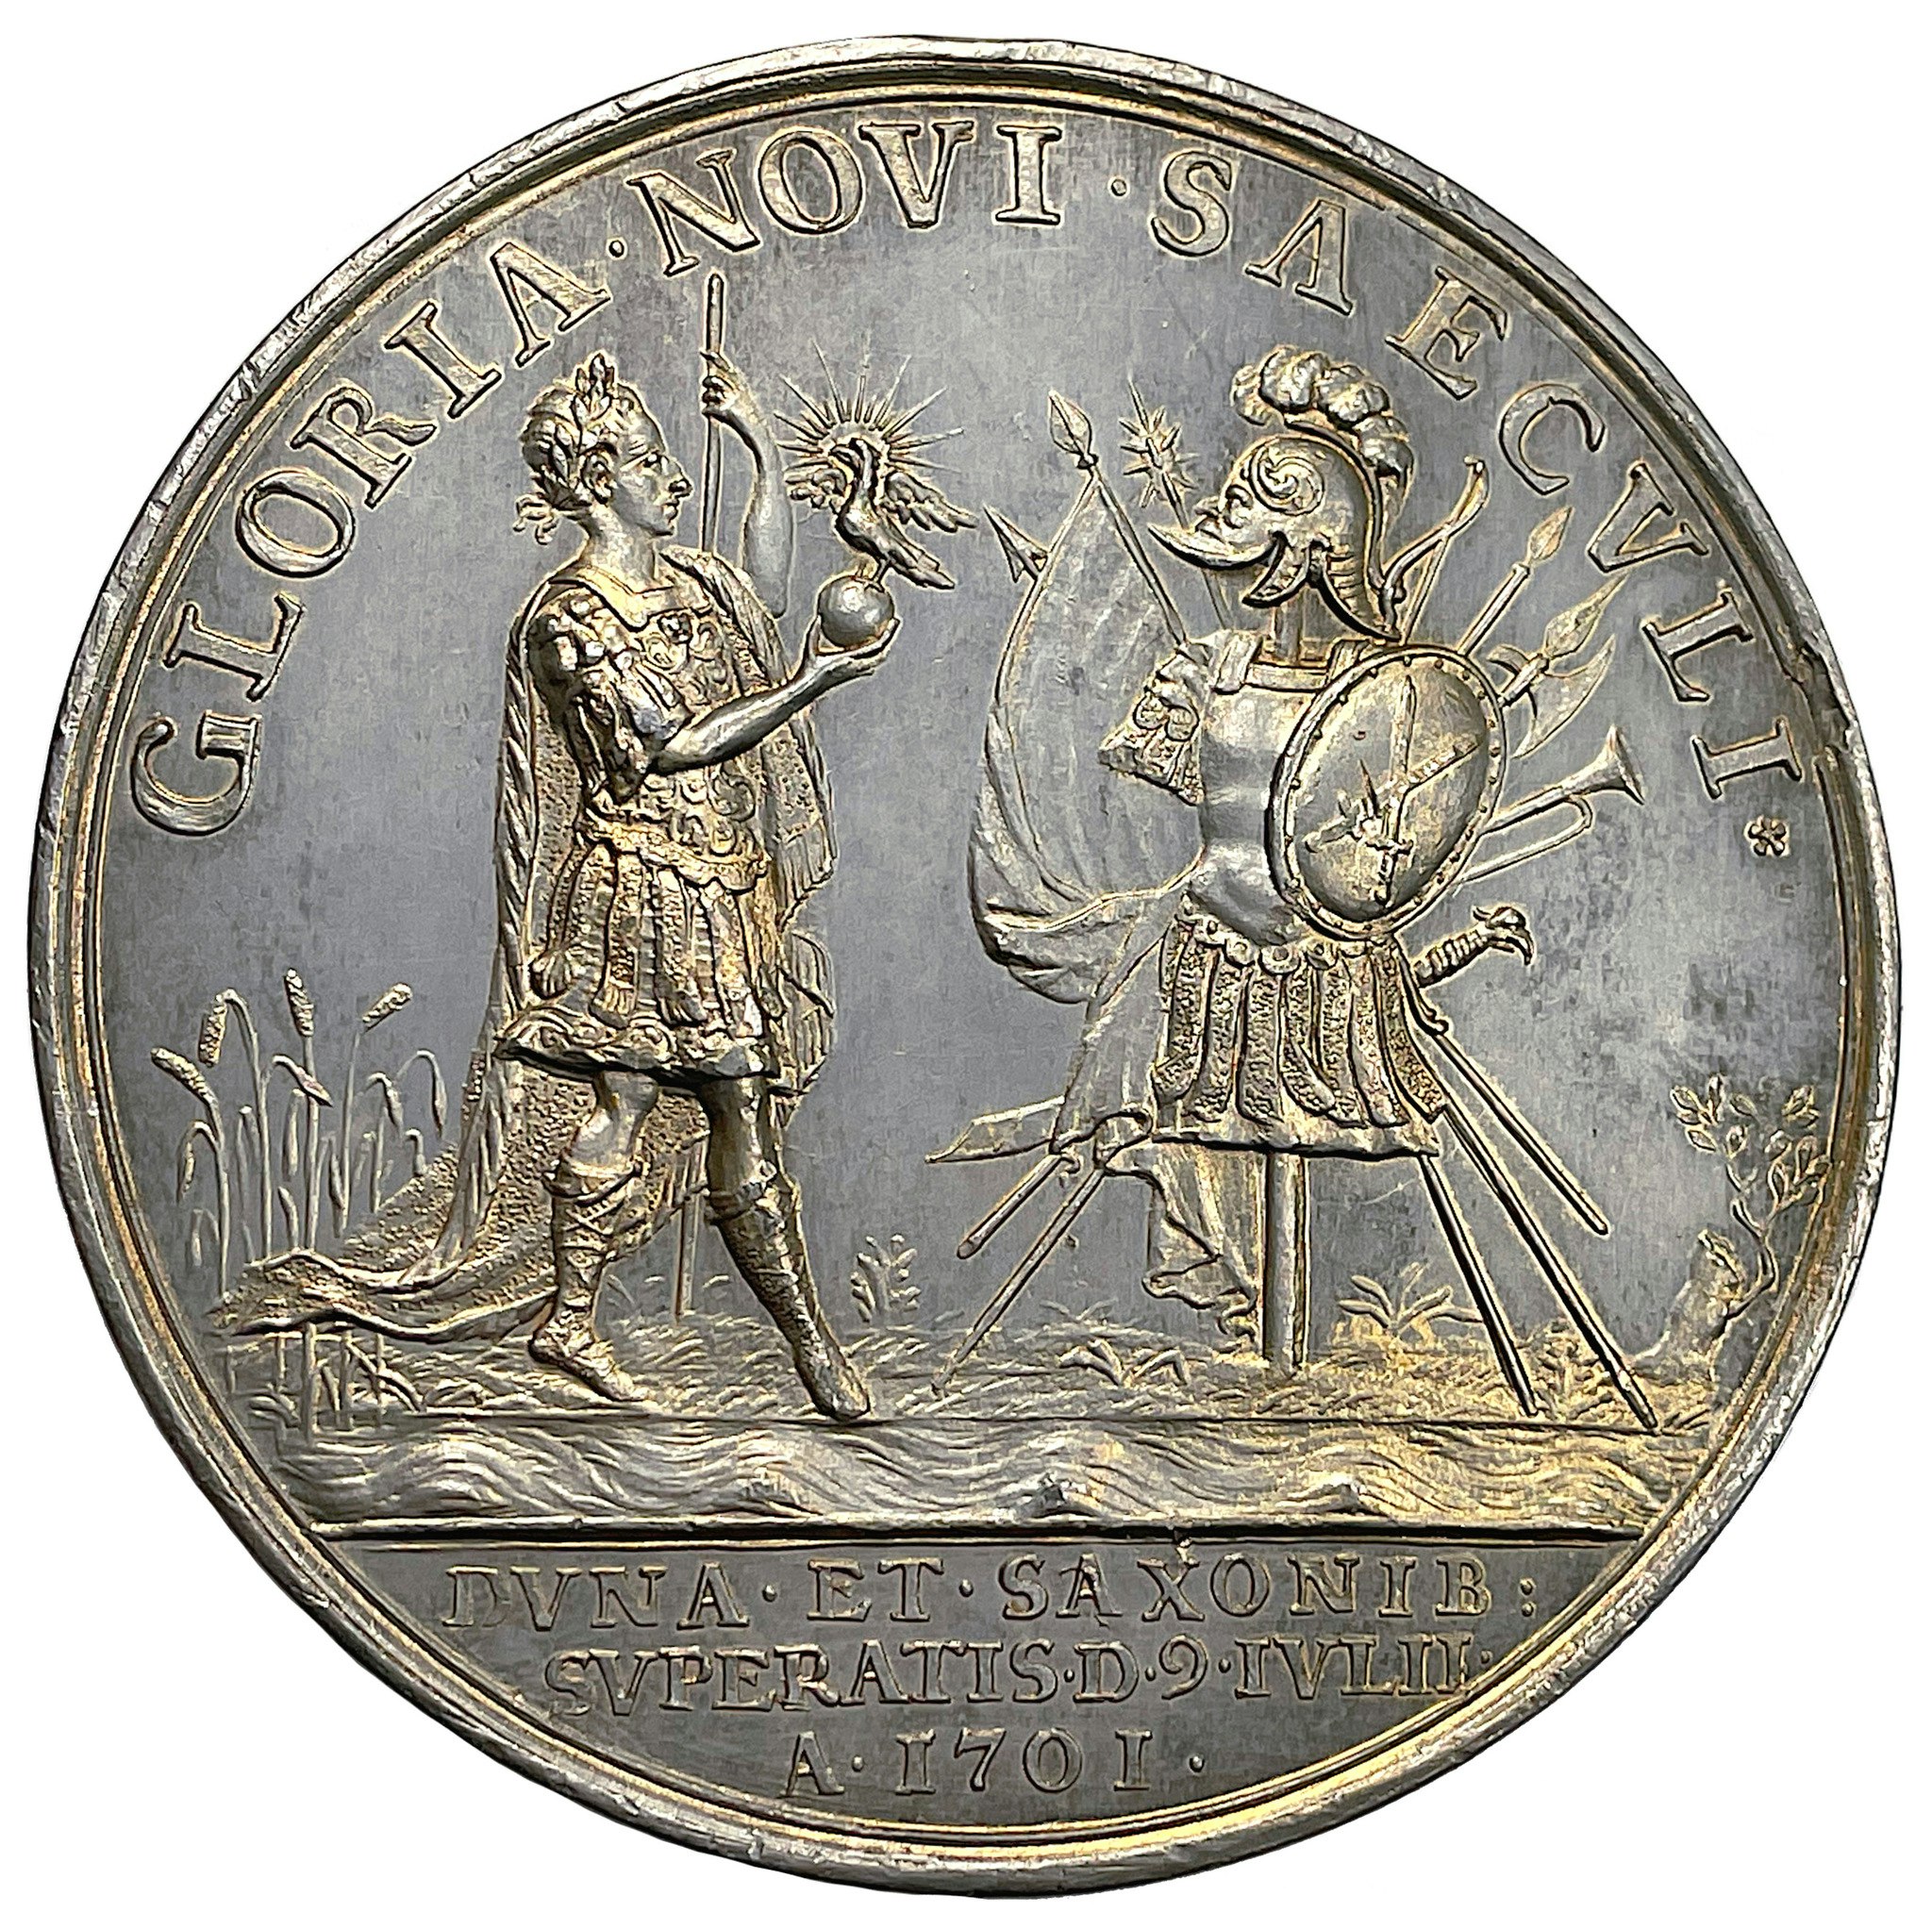 Karl XII går med sin här över Dünafloden och besegrar konung Augusts armé nära Riga den 9 juli 1701 - Mycket sällsynt och vackert toppexemplar av Carl Gustaf Hartman